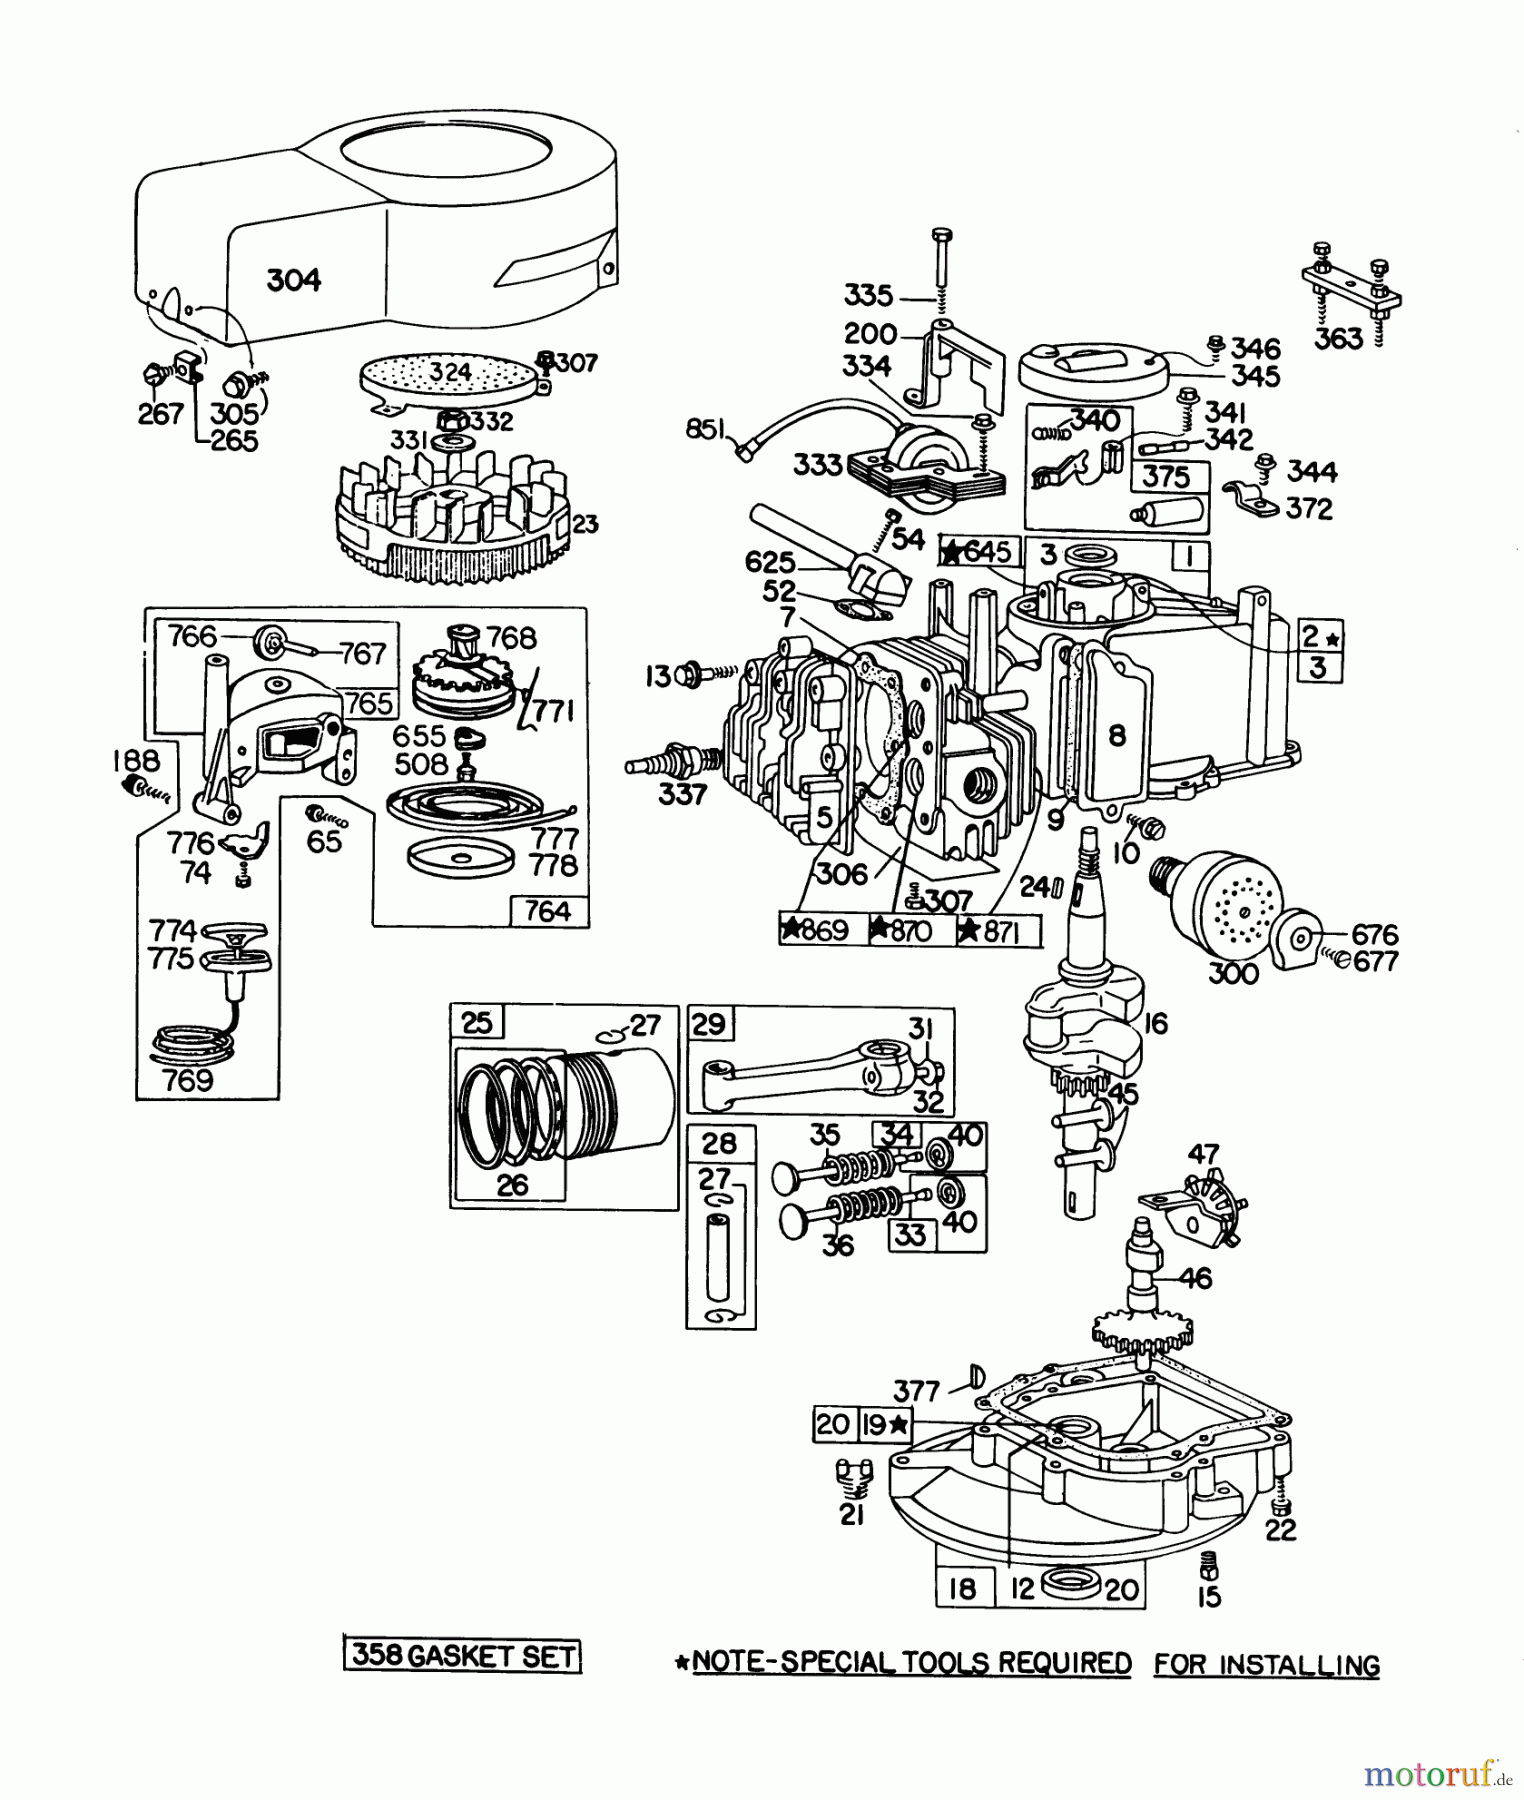  Toro Neu Mowers, Walk-Behind Seite 1 20698 - Toro Lawnmower, 1978 (8000001-8999999) ENGINE BRIGGS & STRATTON MODEL NO. 92908-1879-01